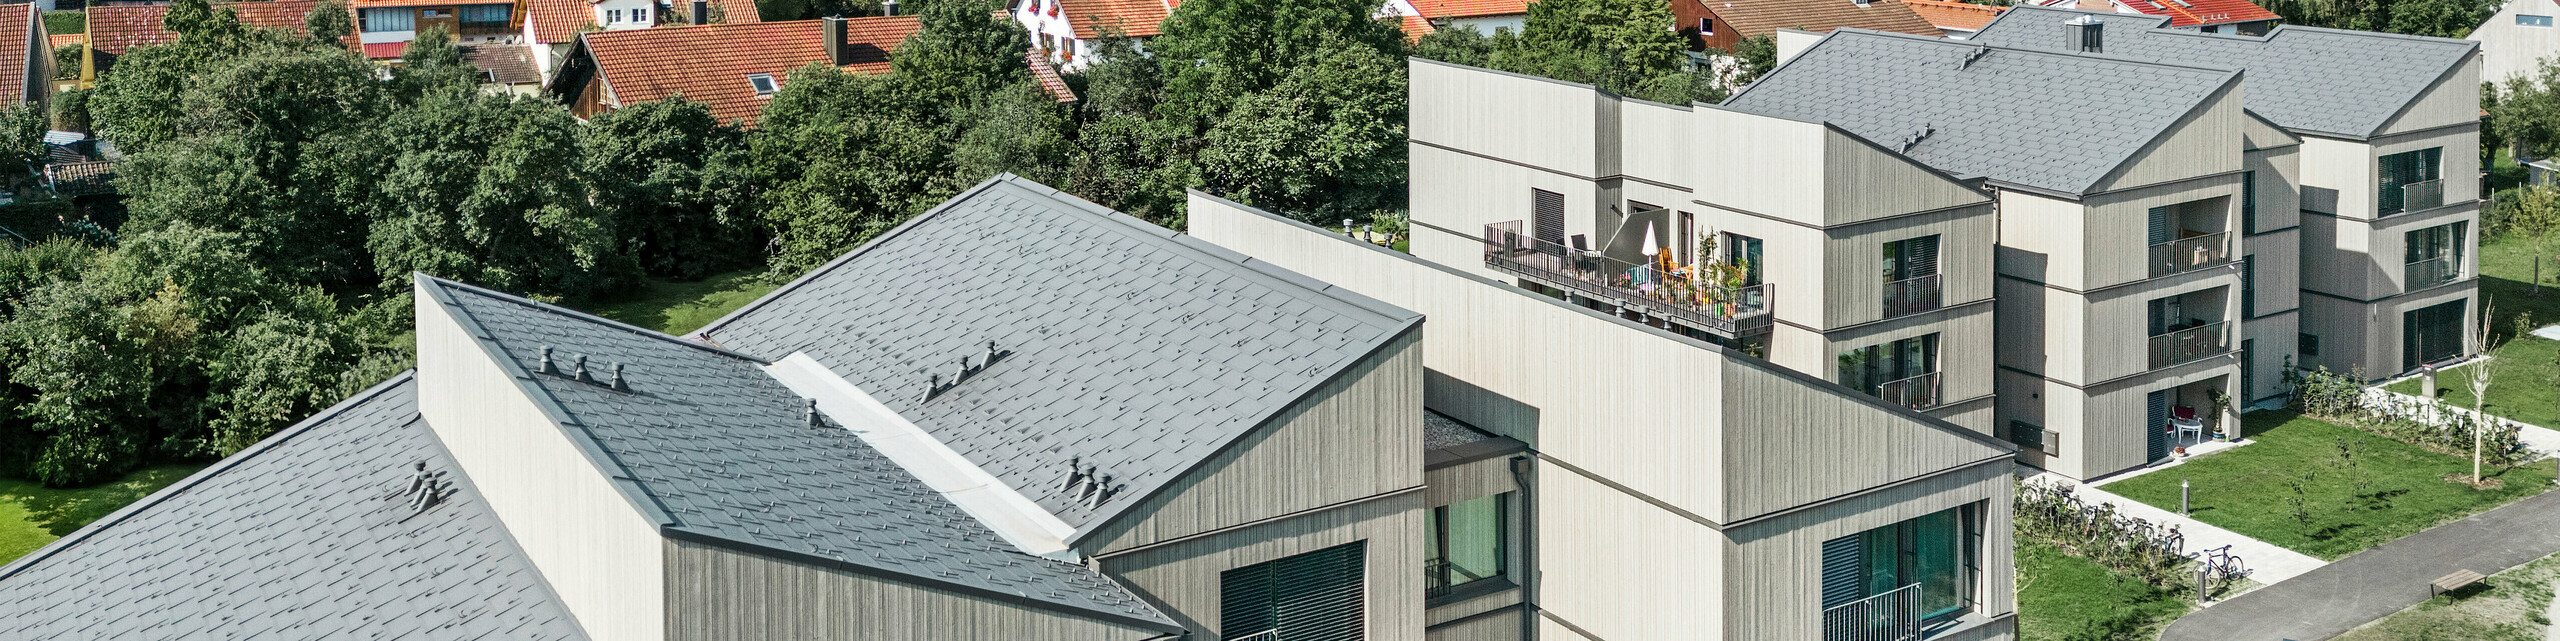 Drohnenaufnahme des modernen Gebäudekomplexes am Schmucker-Areal in Utting am Ammersee (Deutschland), mit innovativer Holzhybridbauweise und langlebigen PREFA Dachplatten R.16 in P.10 Dunkelgrau. Die Gebäude zeichnen sich durch ihre klaren Linien und nachhaltige Architektur aus, kombiniert mit eleganten Holzfassaden und großzügigen Balkonen. Die hochwertige Verarbeitung der PREFA Aluminiumprodukte sorgt für optimale Wetterbeständigkeit und Langlebigkeit, während die harmonische Integration in die grüne Umgebung eine einladende Wohnatmosphäre schafft. Im Vordergrund ist ein begrünter Spielplatz zu sehen, der zur familienfreundlichen Gestaltung des Areals beiträgt.